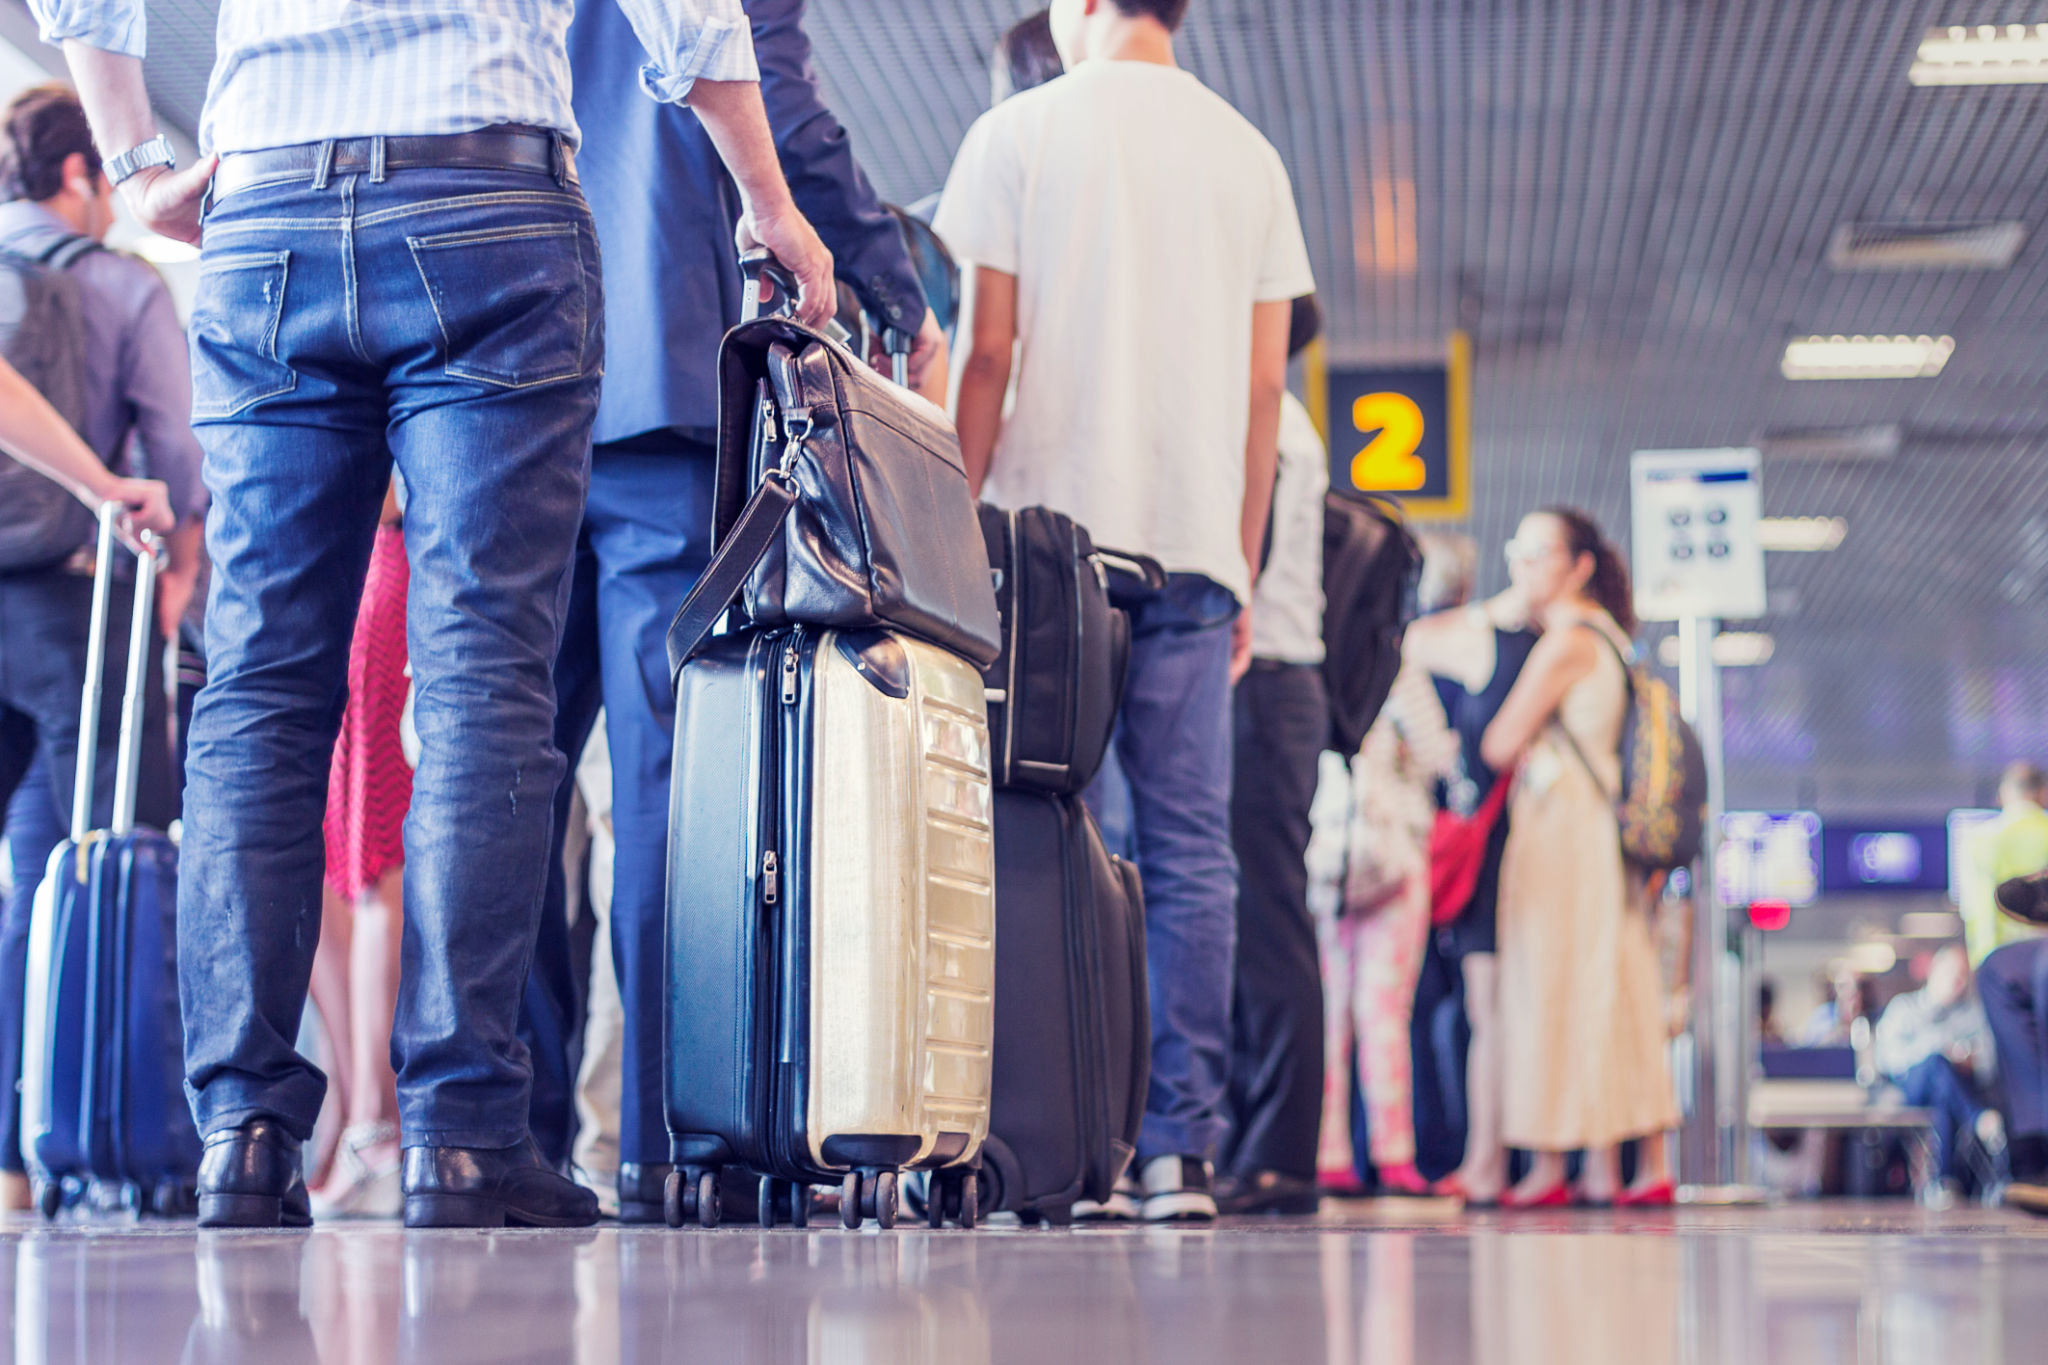 Documentos necessários para viagem internacional: conheça o checklist para visitar outros países | Passageiros esperando para fazer check-in | Conexão123